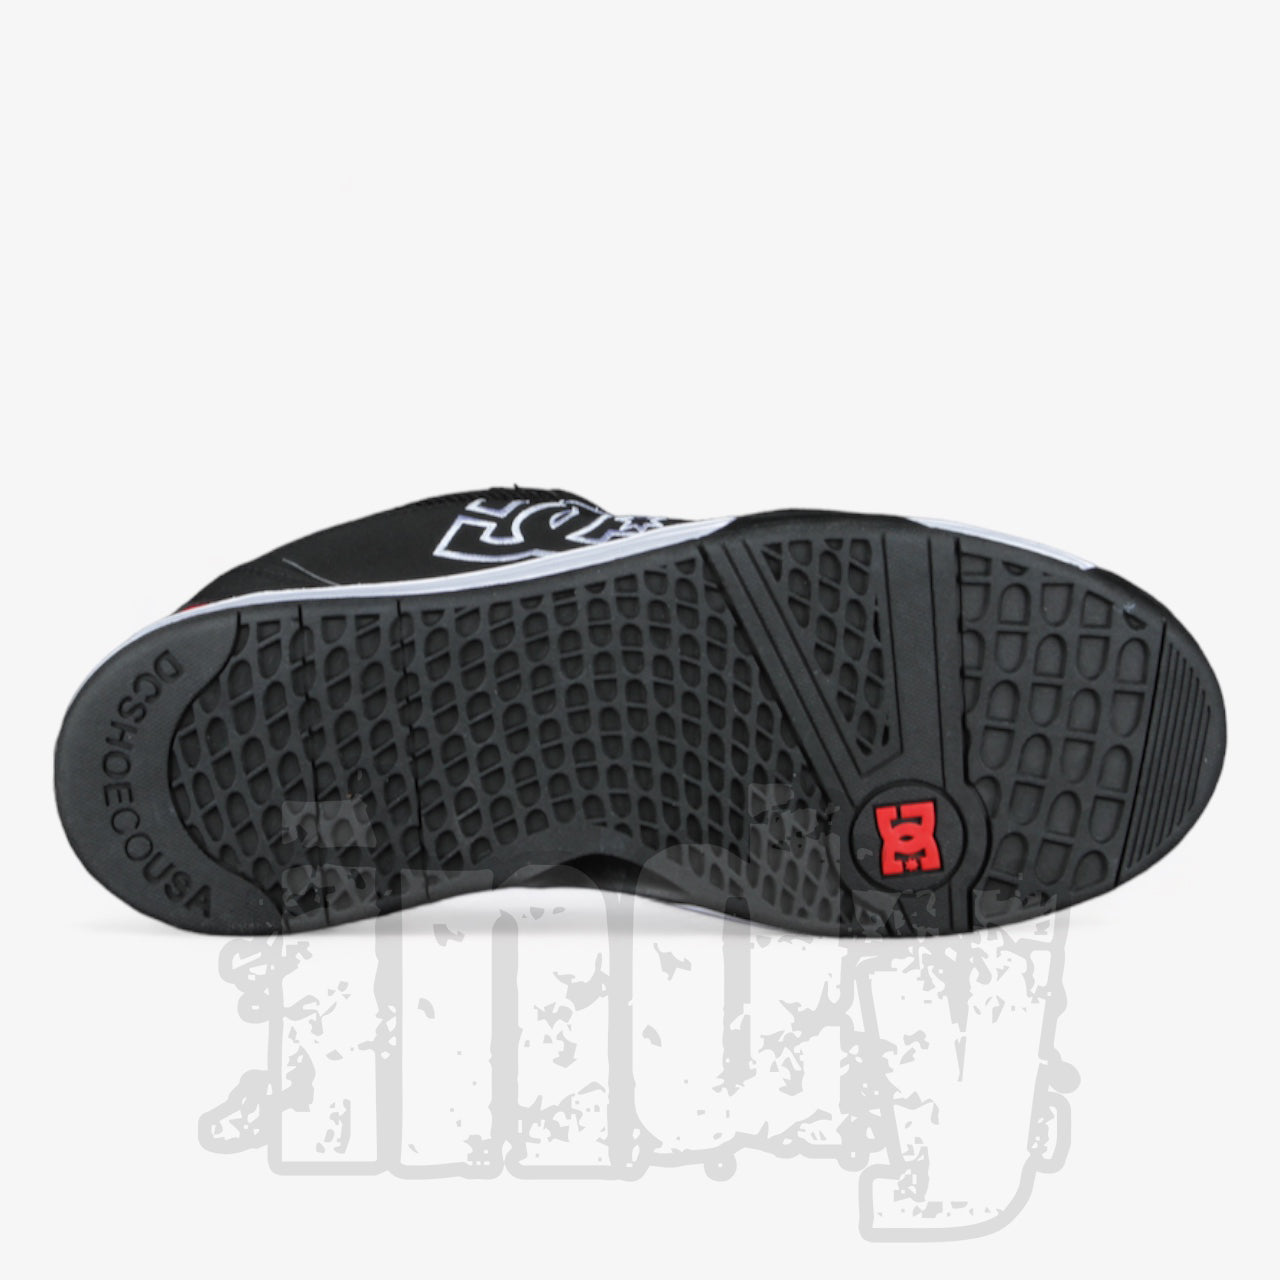 Zapatillas Dc Versatile Rs Negro Blanco Rojo - Indy